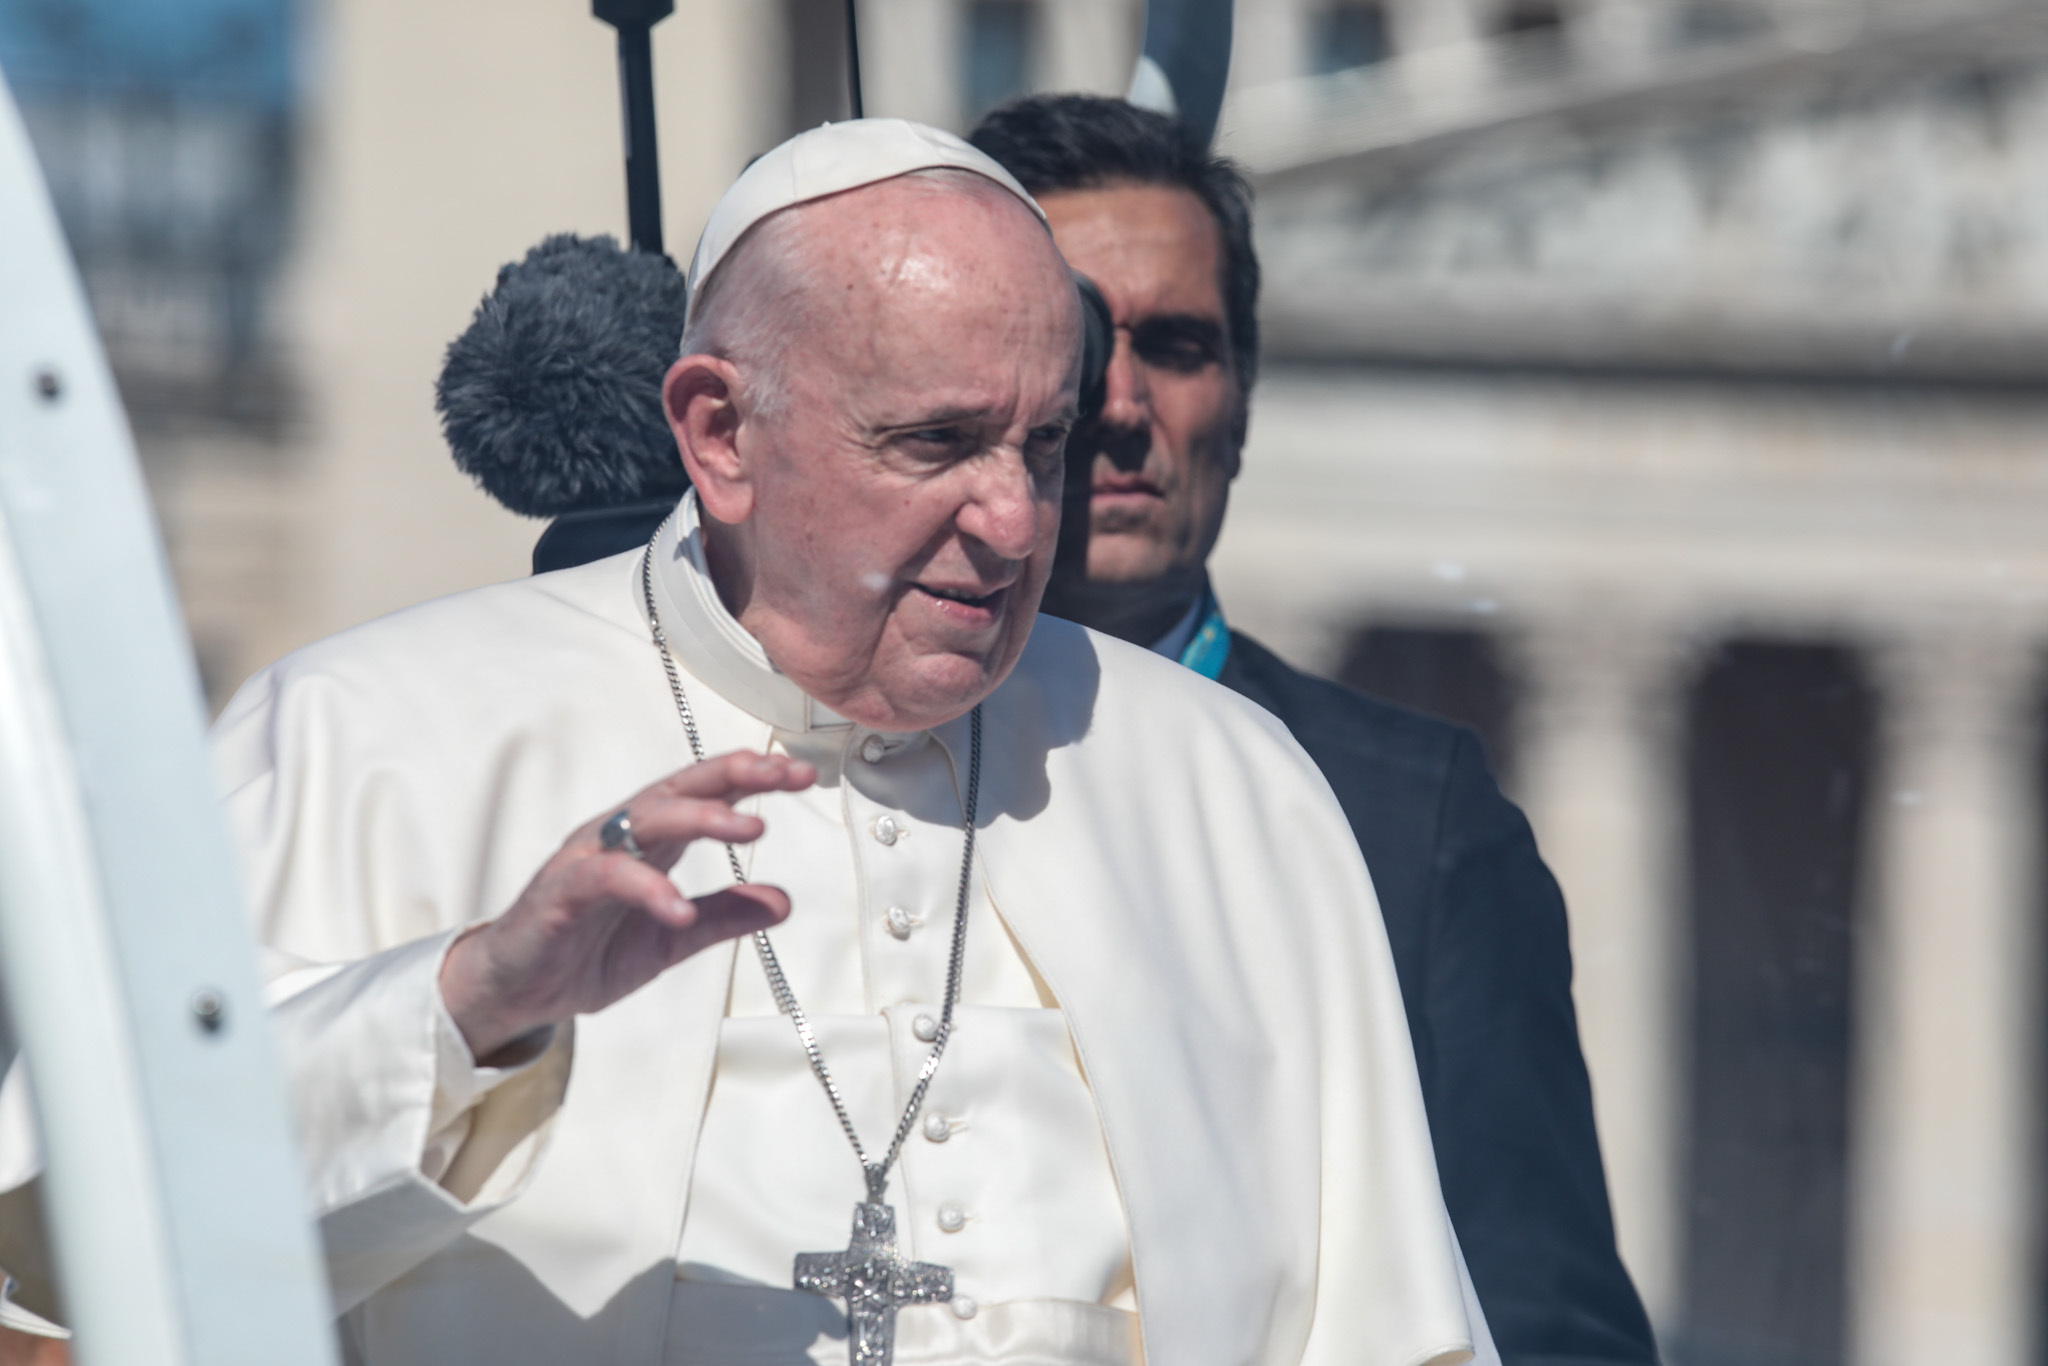 Ferenc pápa valószínűleg elindította az elmúlt 60 év legjelentősebb egyházi reformját